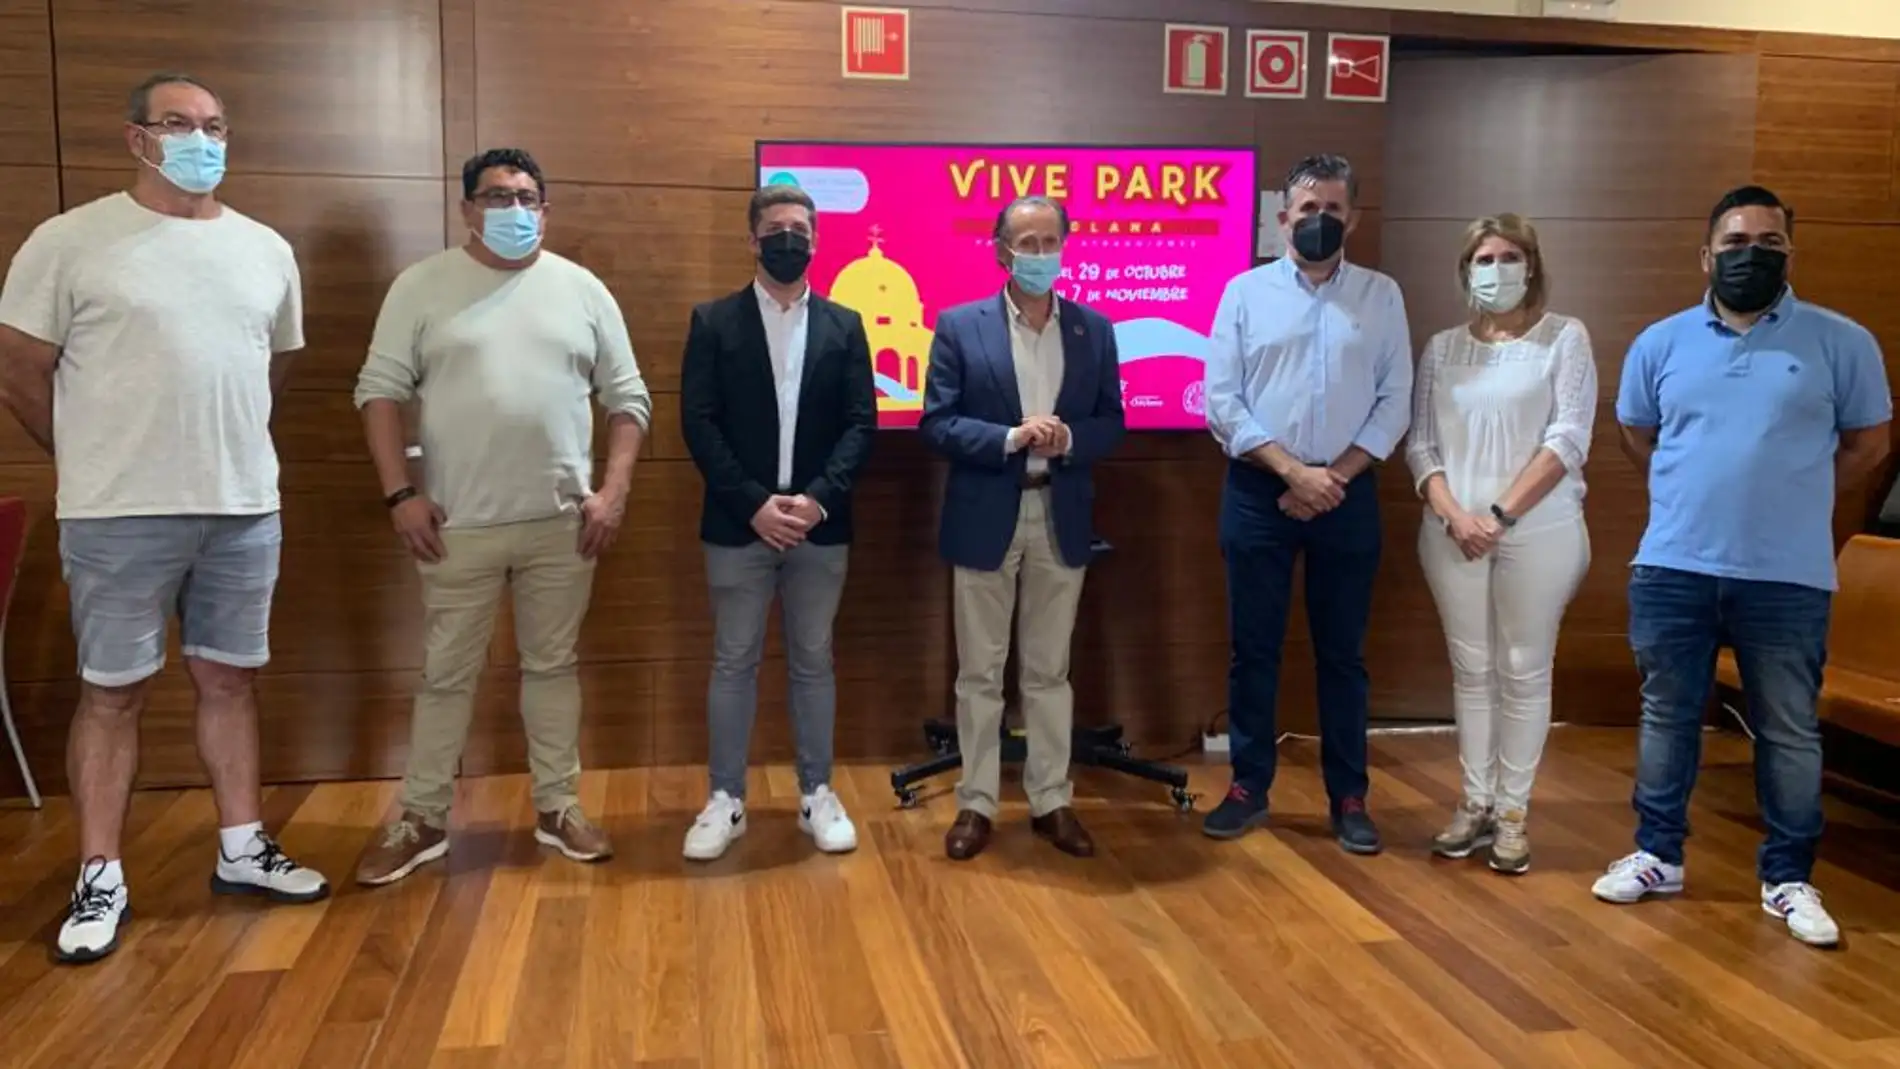 Instantes de la presentación de Vive Park en Chiclana con José Alberto Cruz